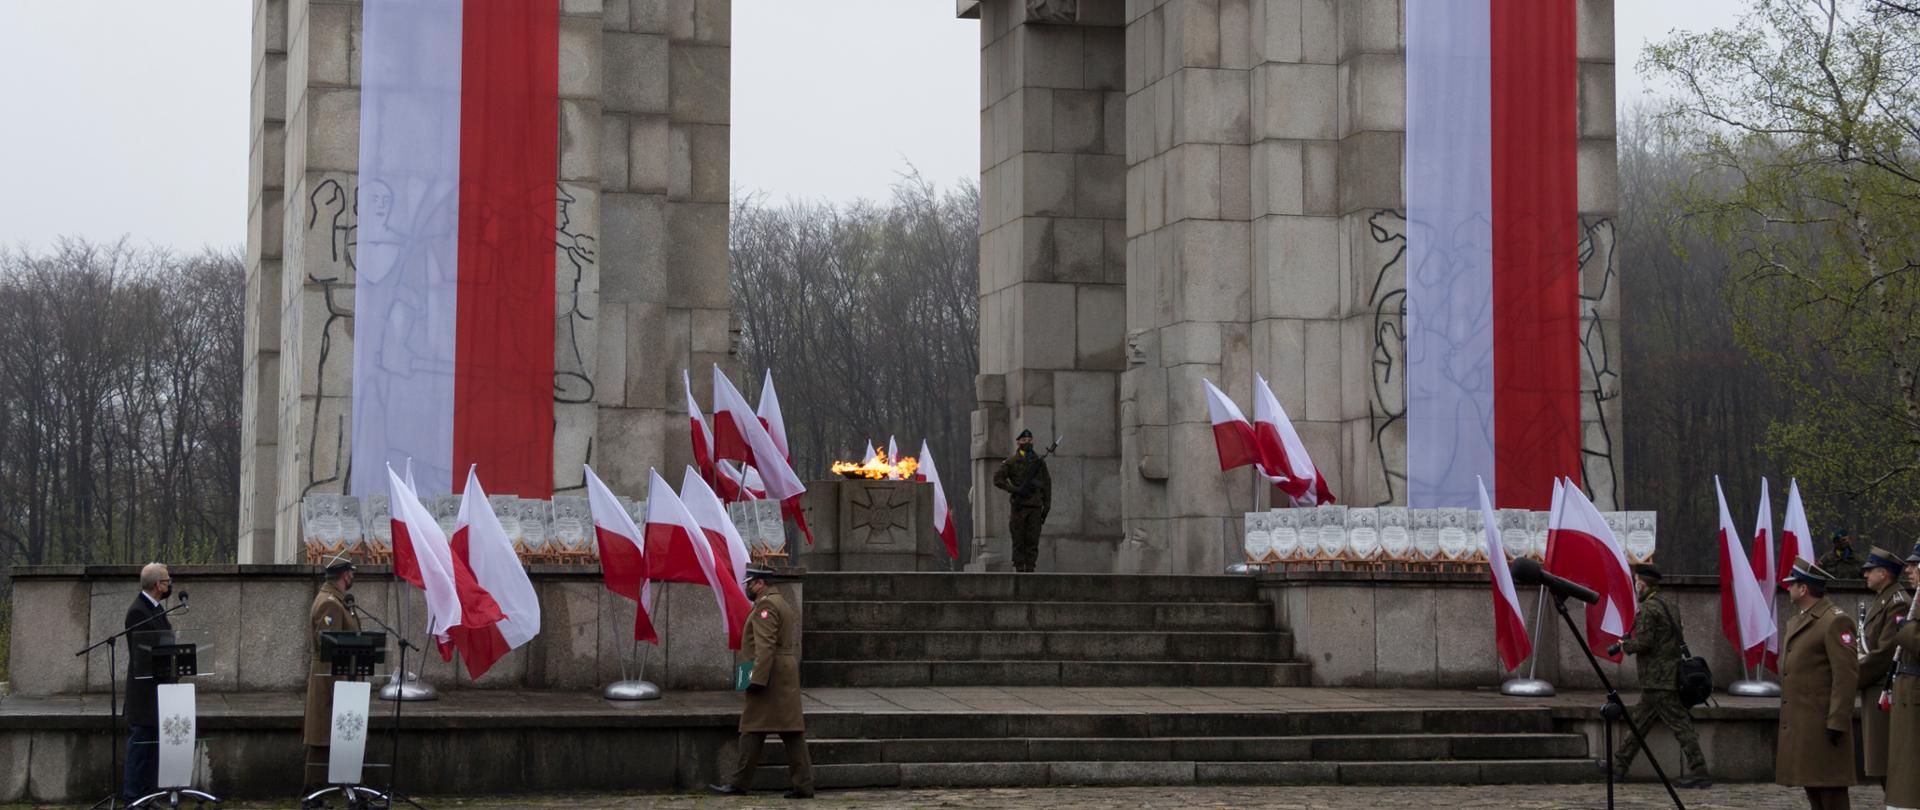 Zdjęcie przedstawia Pomnik Czynu Powstańczego na Górze Świętej Anny podczas uroczystości z okazji setnej rocznicy wybuchu III Powstania Śląskiego. Pomnik przystrojony w barwy narodowe oraz Flagi Rzeczypospolitej Polskiej.